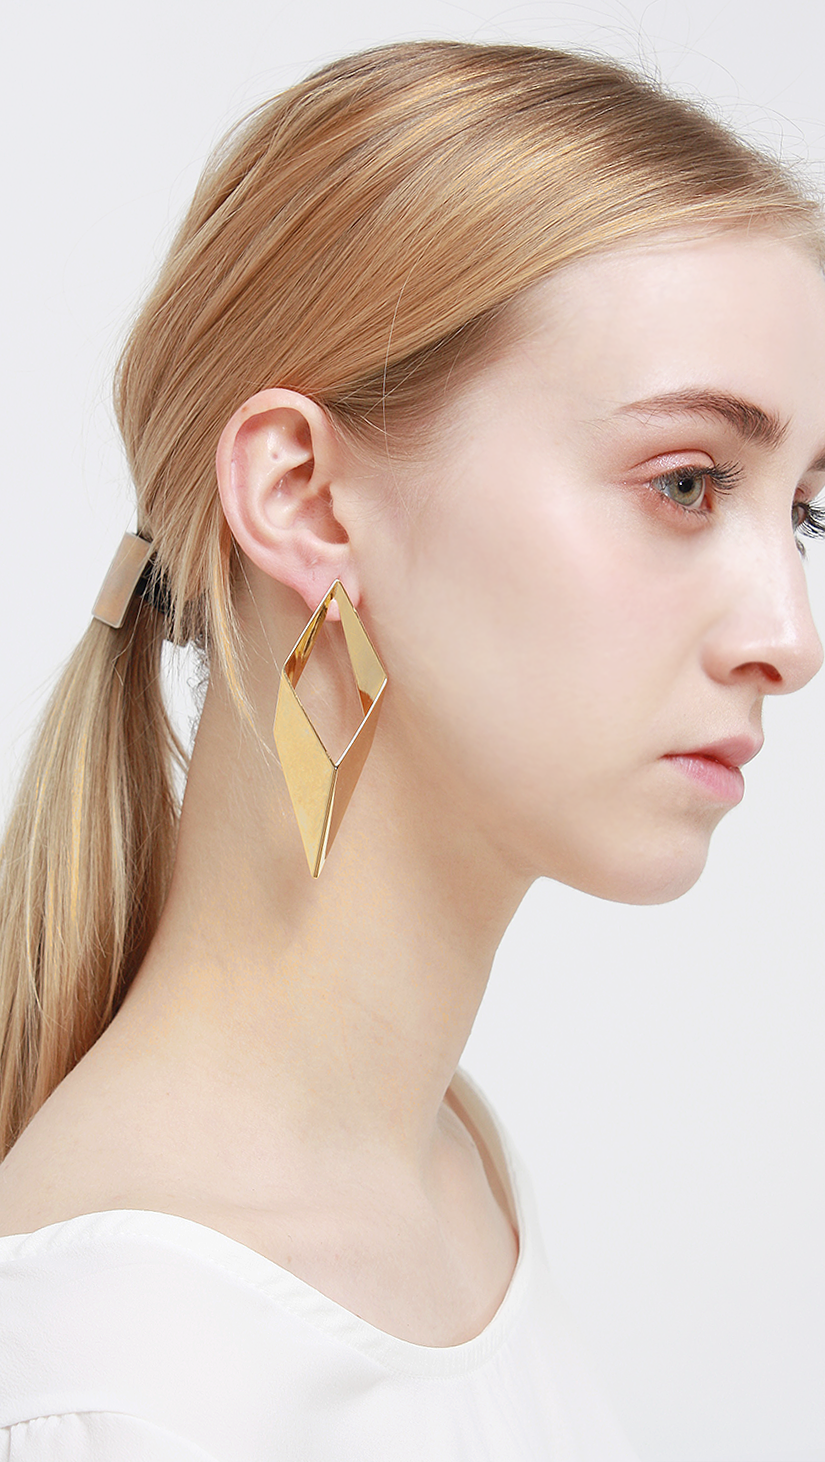 Swirl Earring in Petal gold earrings.